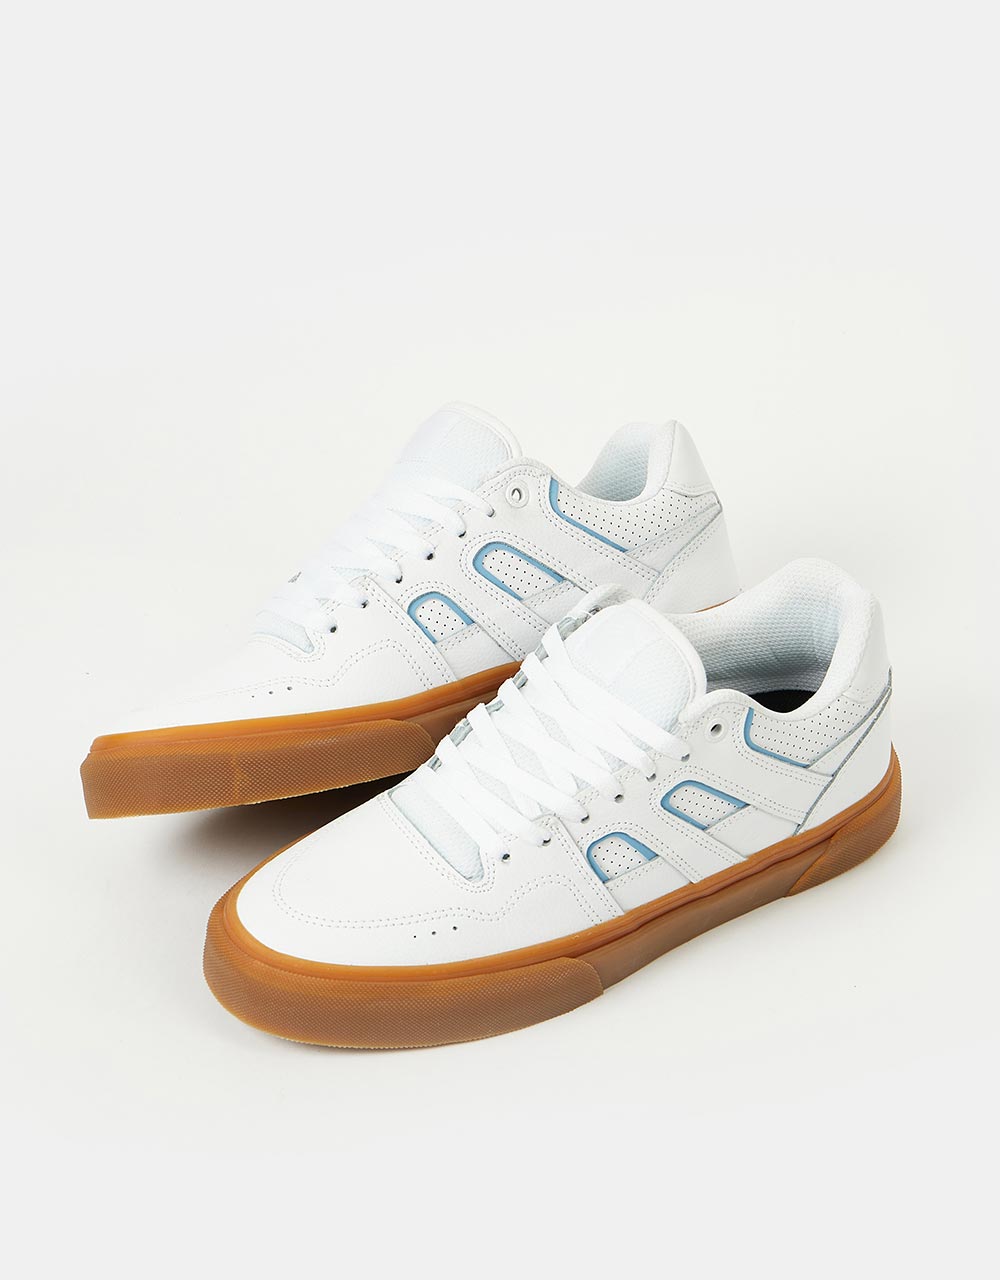 Emerica Tilt G6 Vulc Skate Shoes - White/Blue/Gum